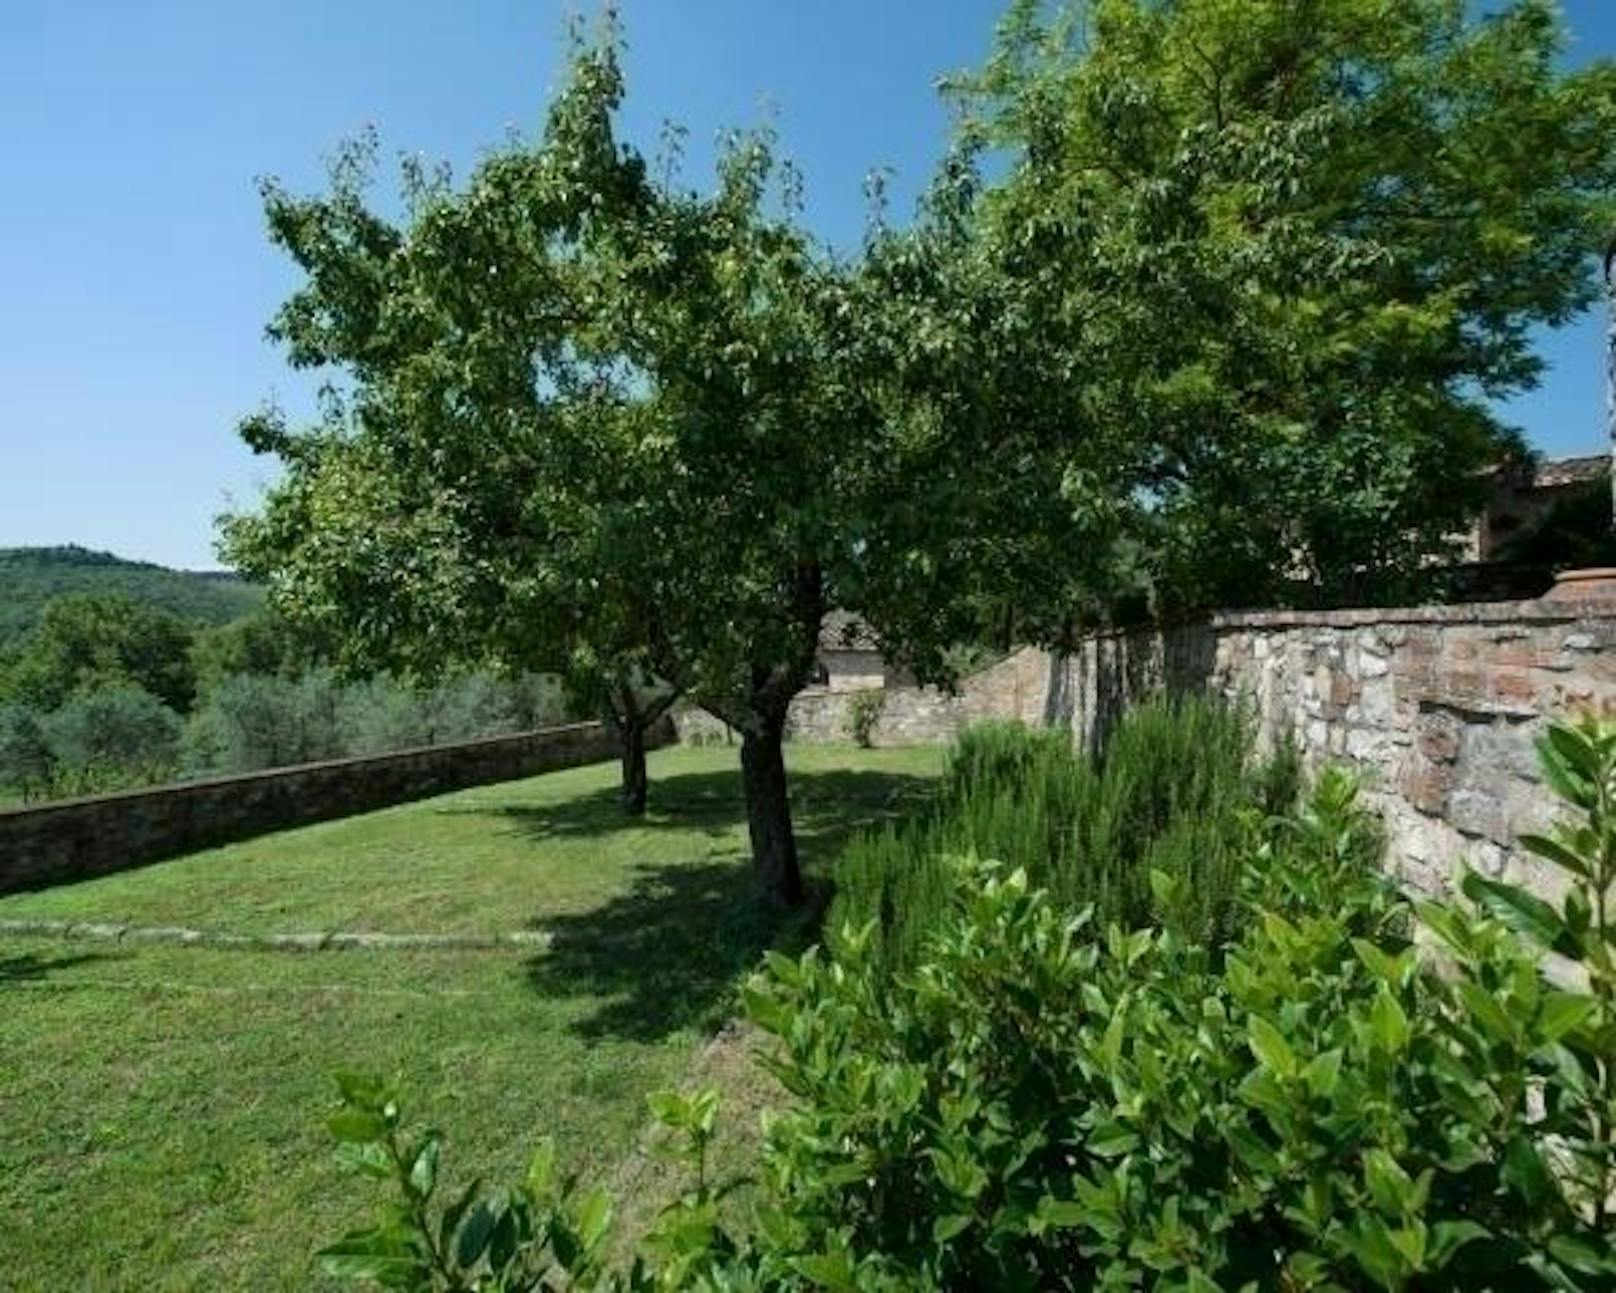 Darauf stehen diverse jahrhundertealte Olivenbäume und Zypressen.